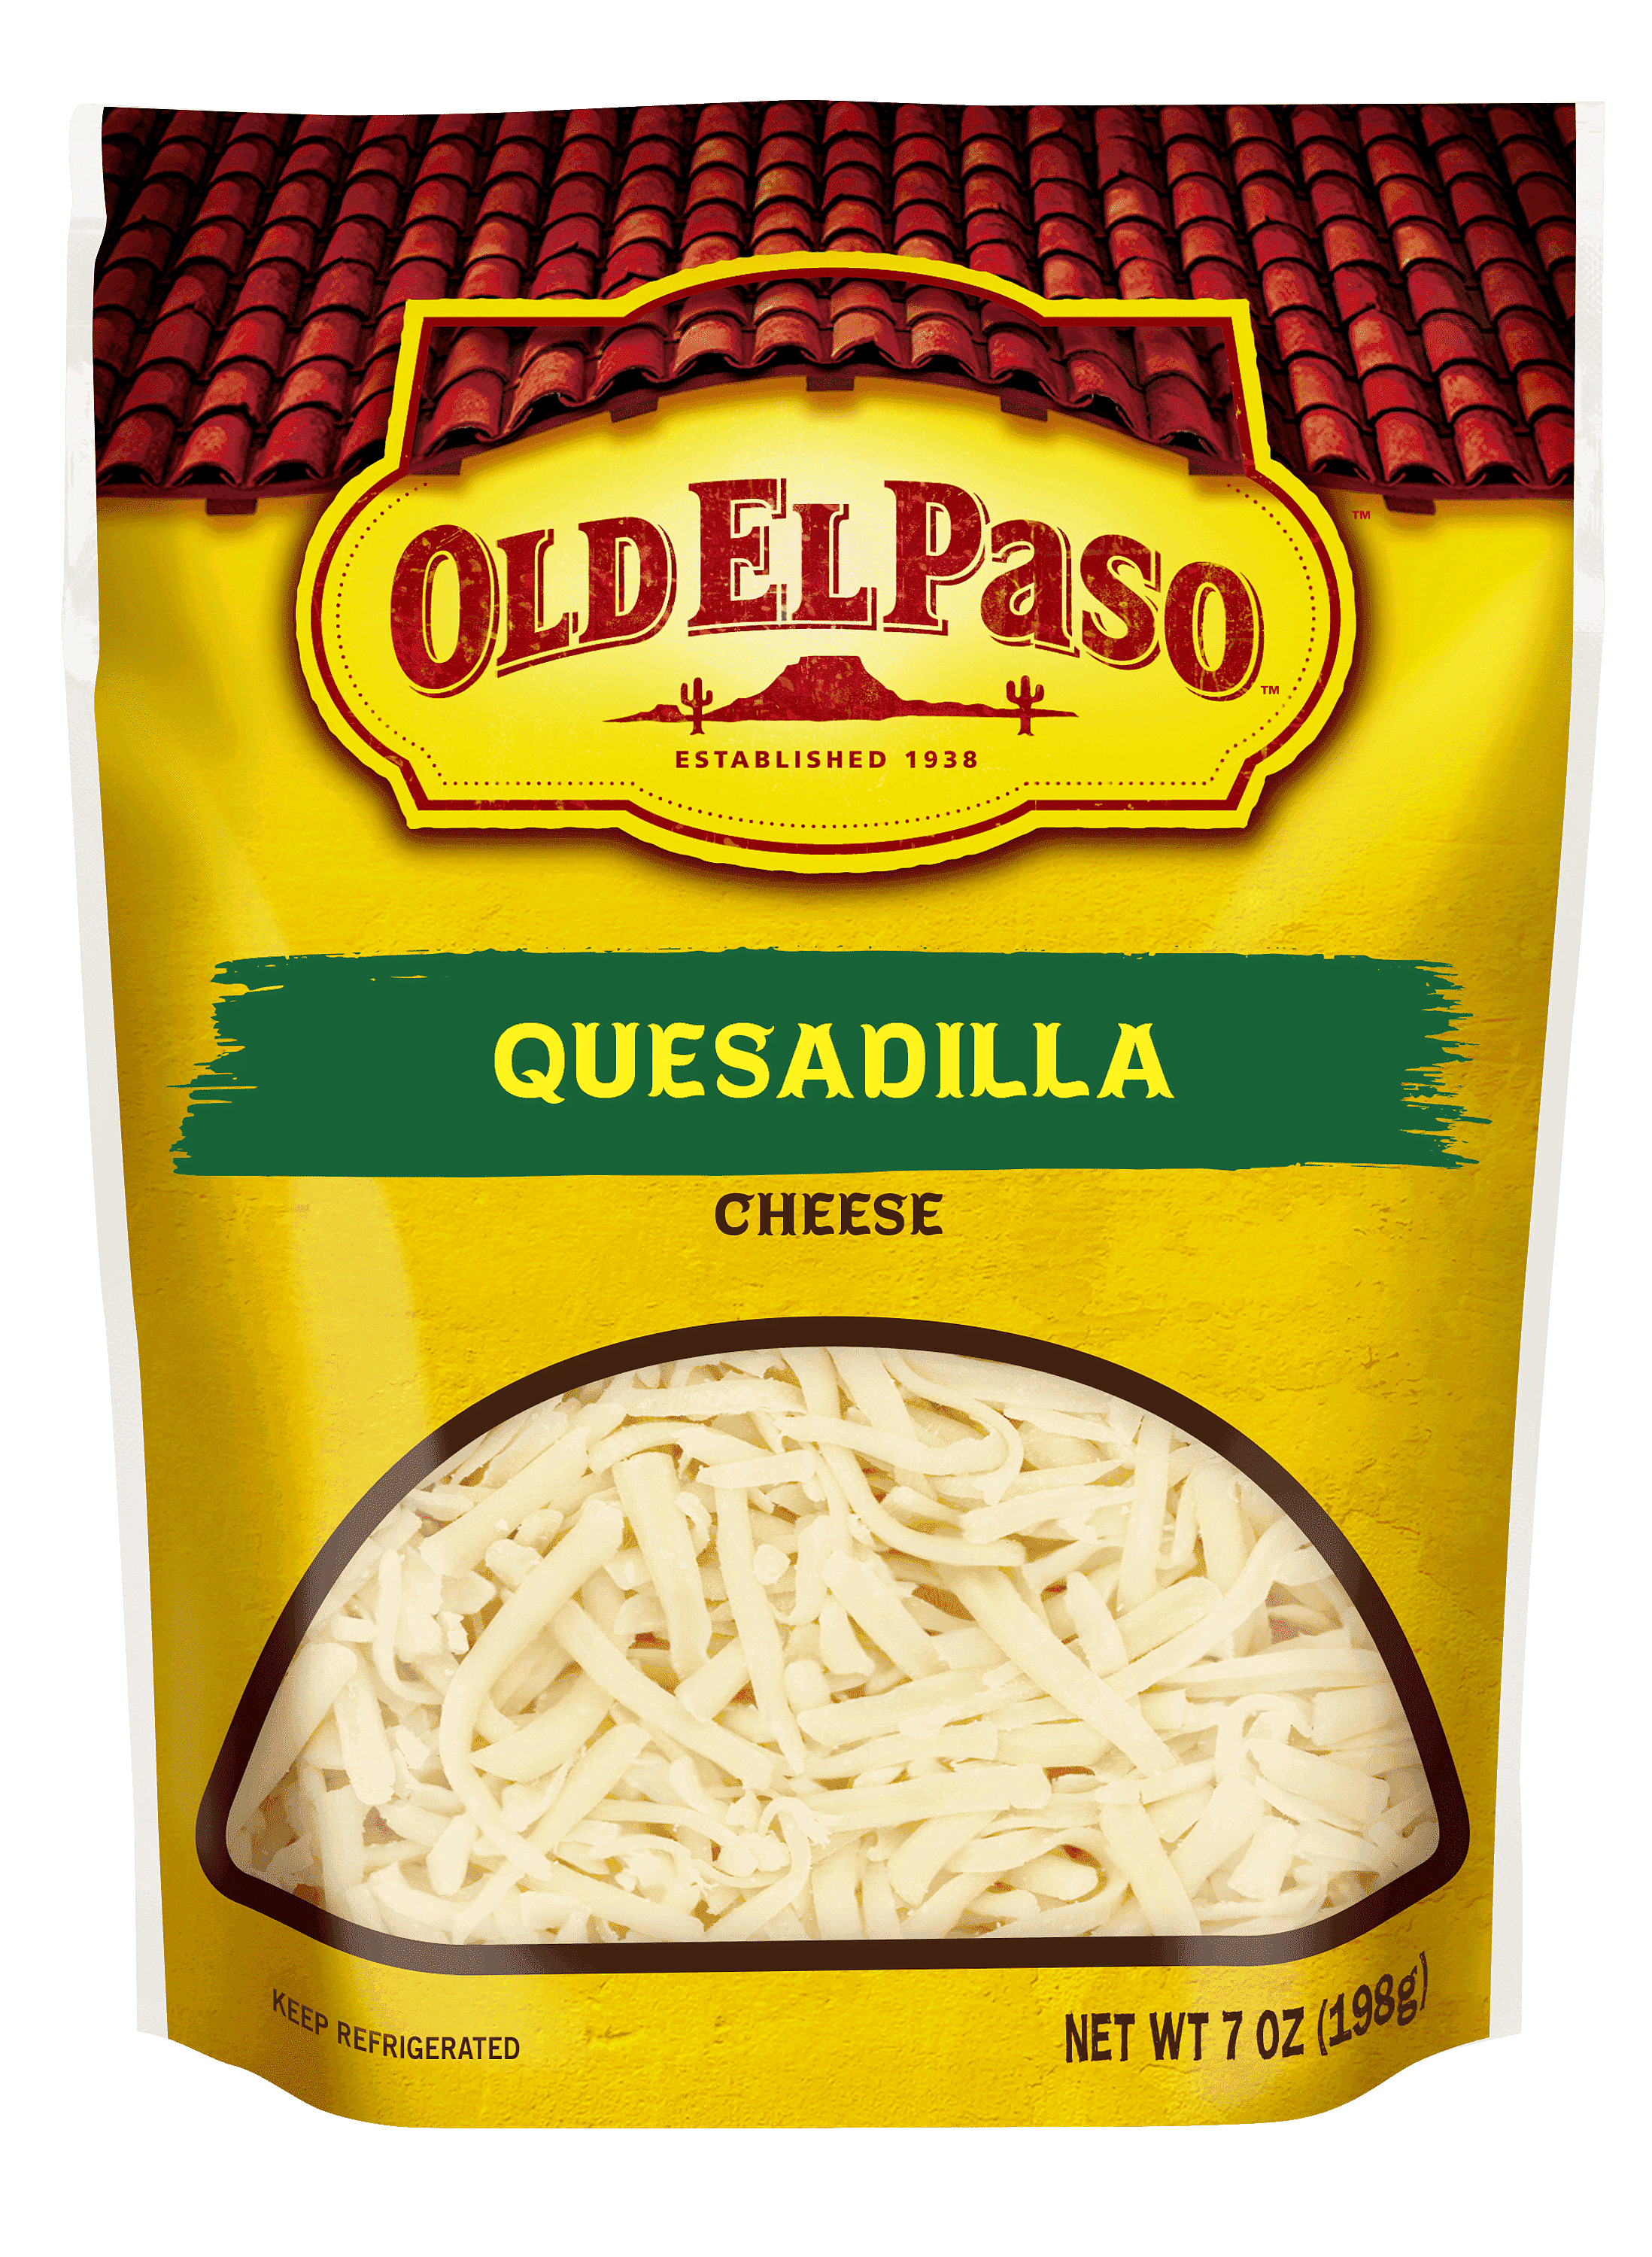 Quesadillas au fromage fondant - Old El Paso